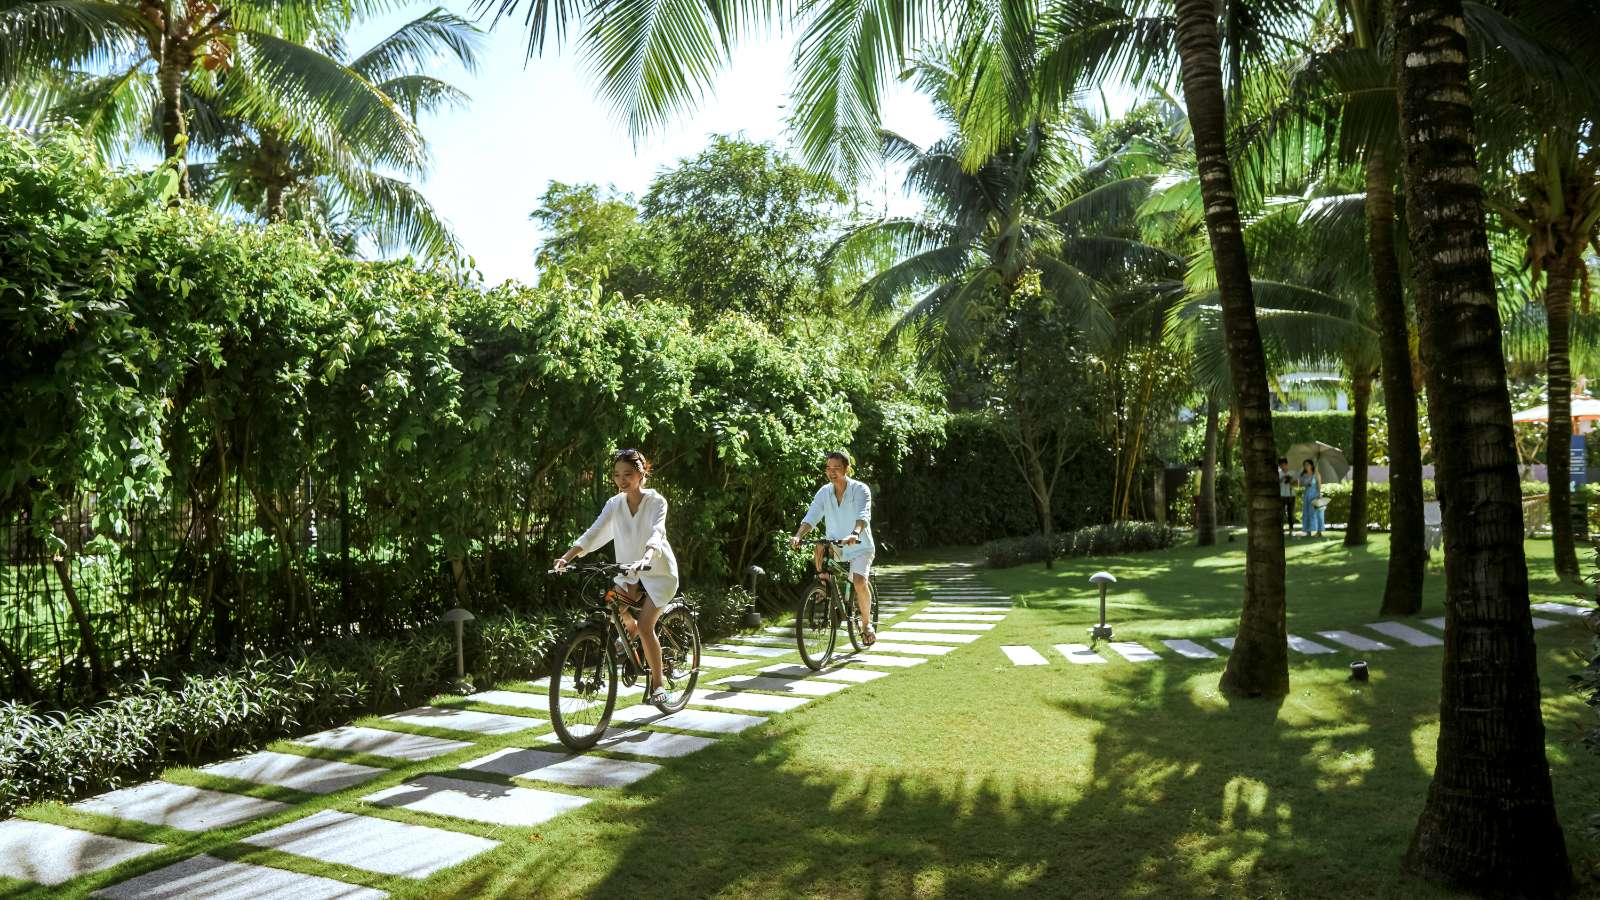 “Tết đoàn viên, vạn an yên” cùng Premier Residences Phu Quoc Emerald Bay